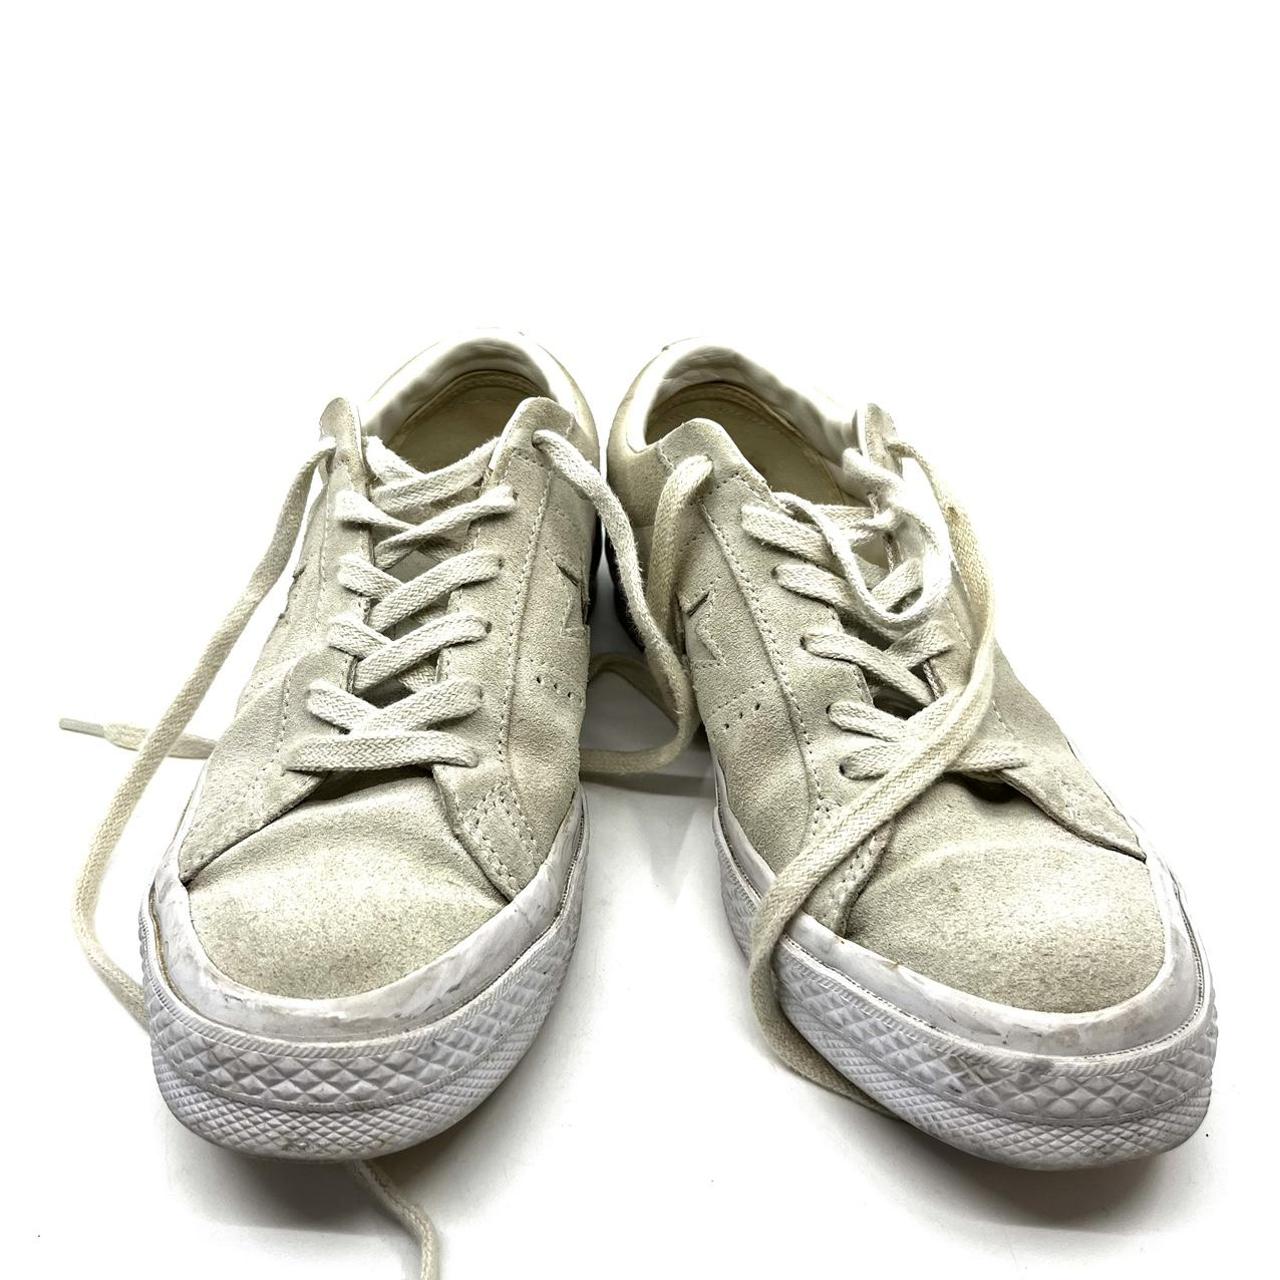 Converse Chuck Taylor All Star Sneaker W37.5 Beige... - Depop